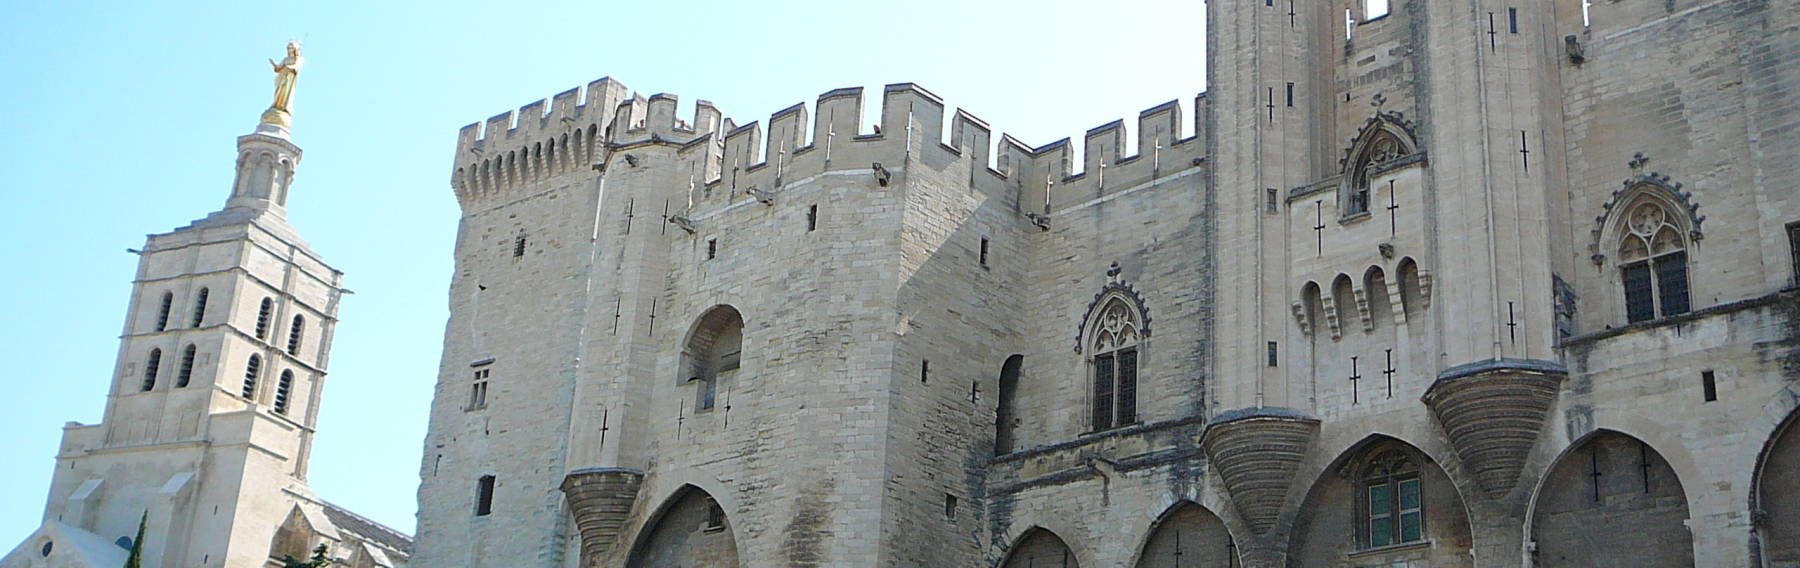 The Palais des Papes at Avignon.